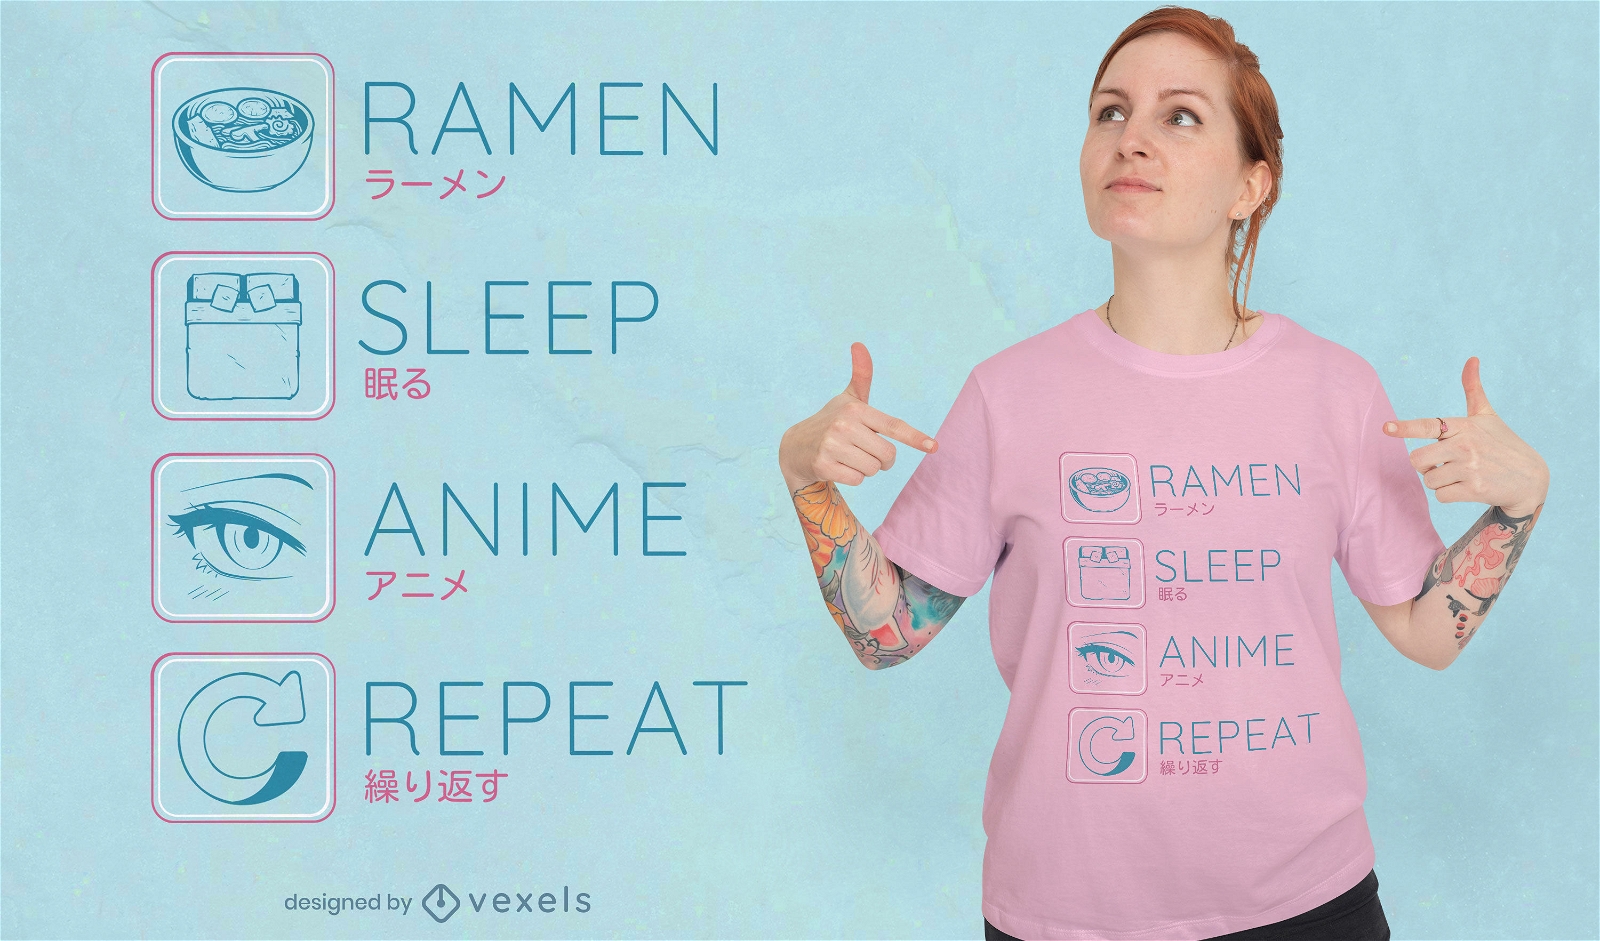 Dise?o de camiseta de rutina de anime Ramen.